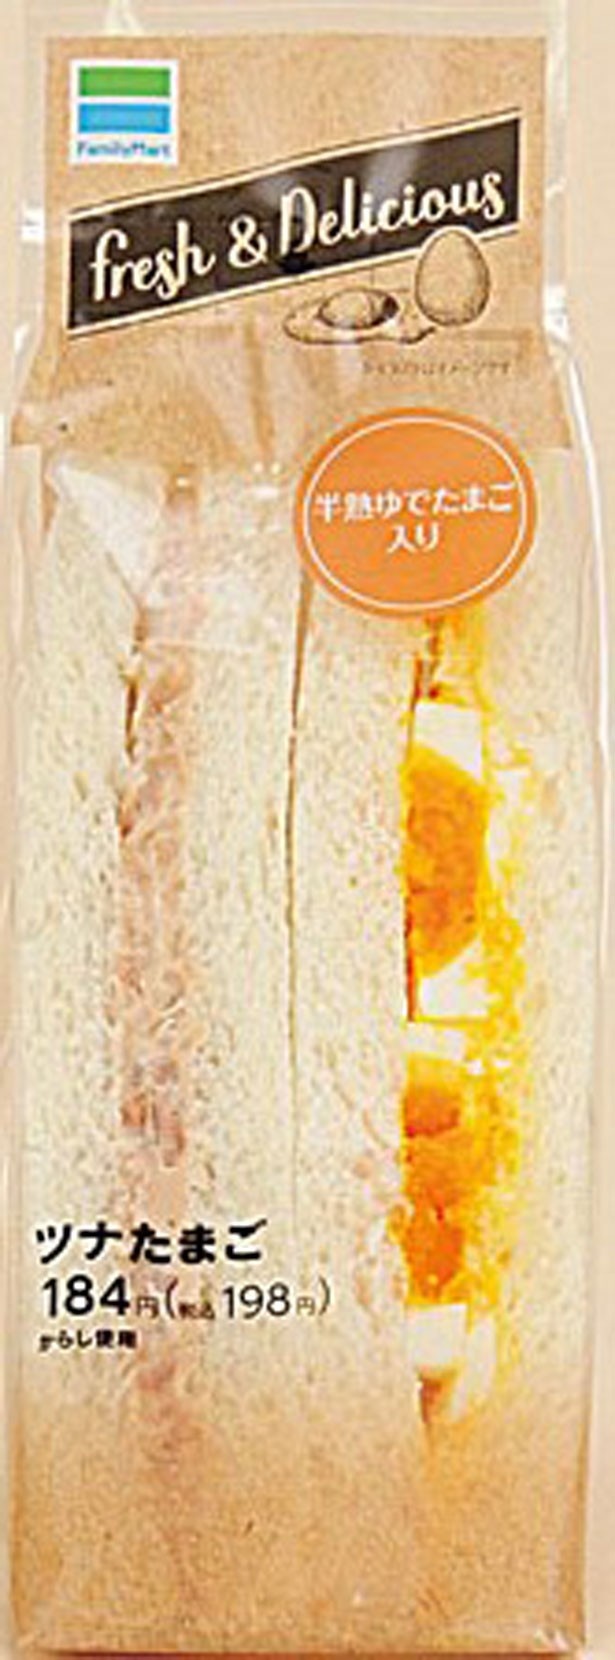 「ツナたまごサンド」(198円)。半熟ゆで玉子を合わせたたまごサラダのサンドイッチと、ツナサラダのサンドイッチがセットに